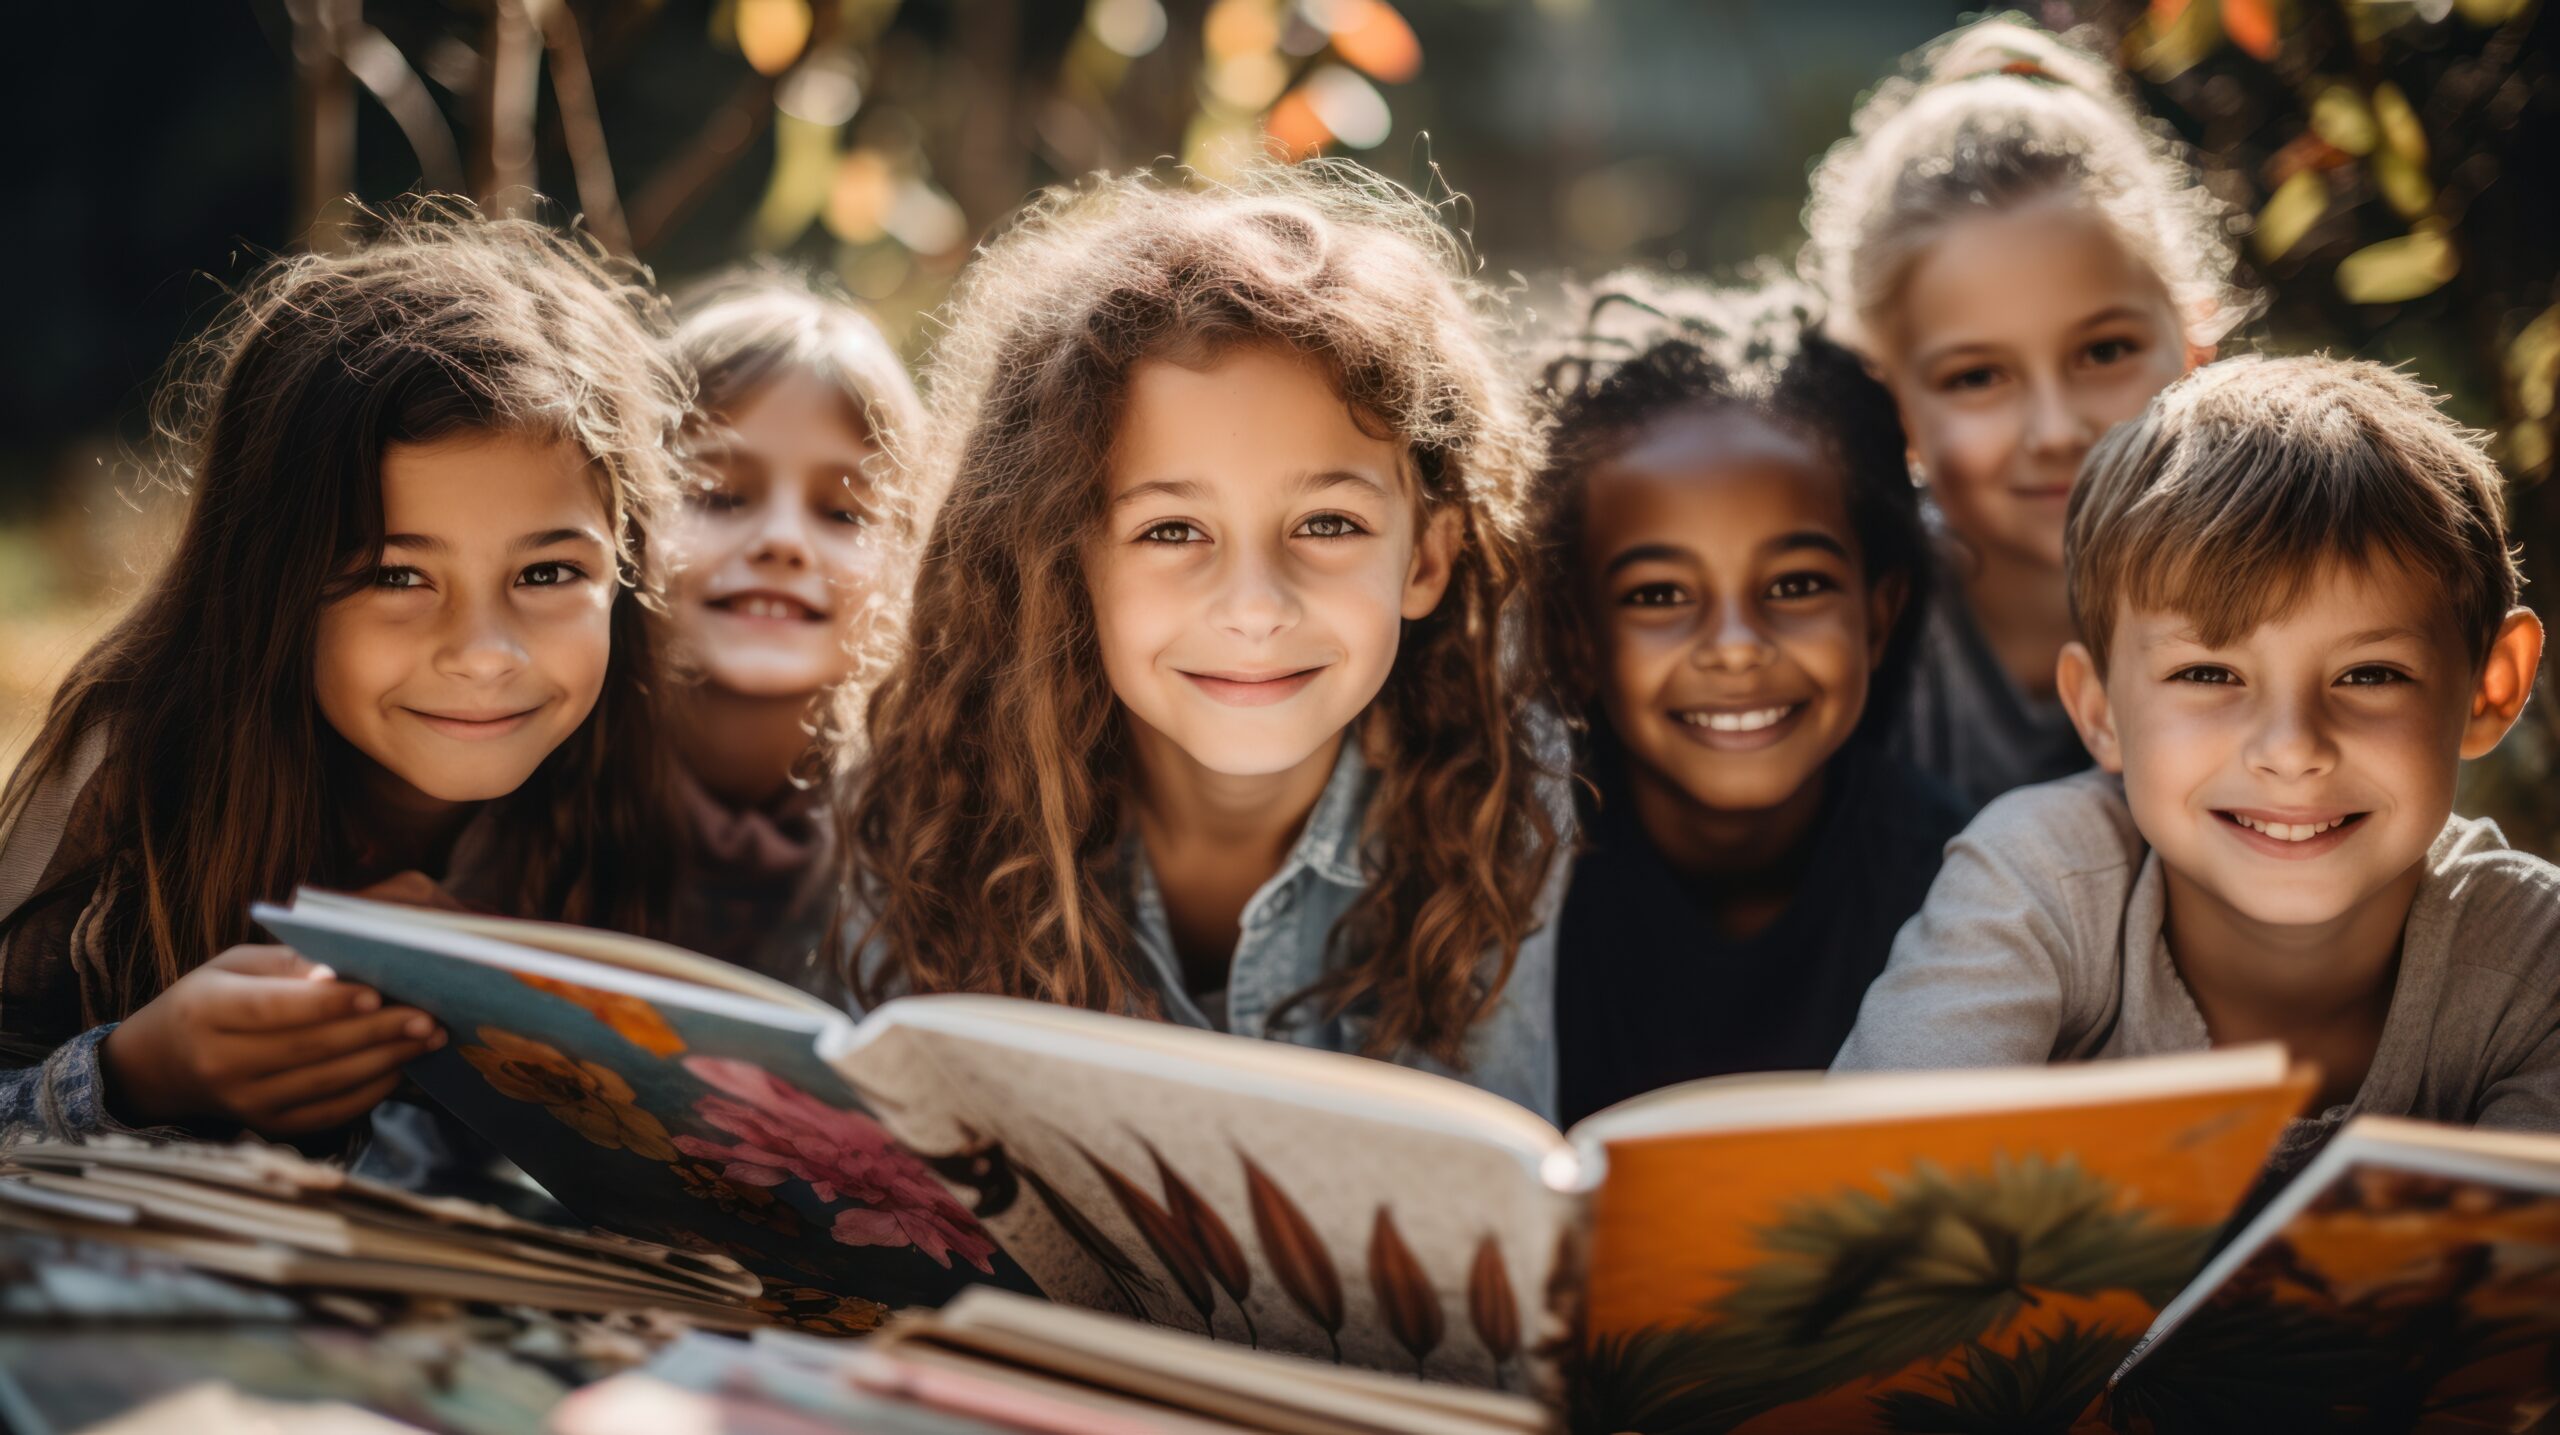 Sześcioro uśmiechniętych dzieci z książkami przed sobą